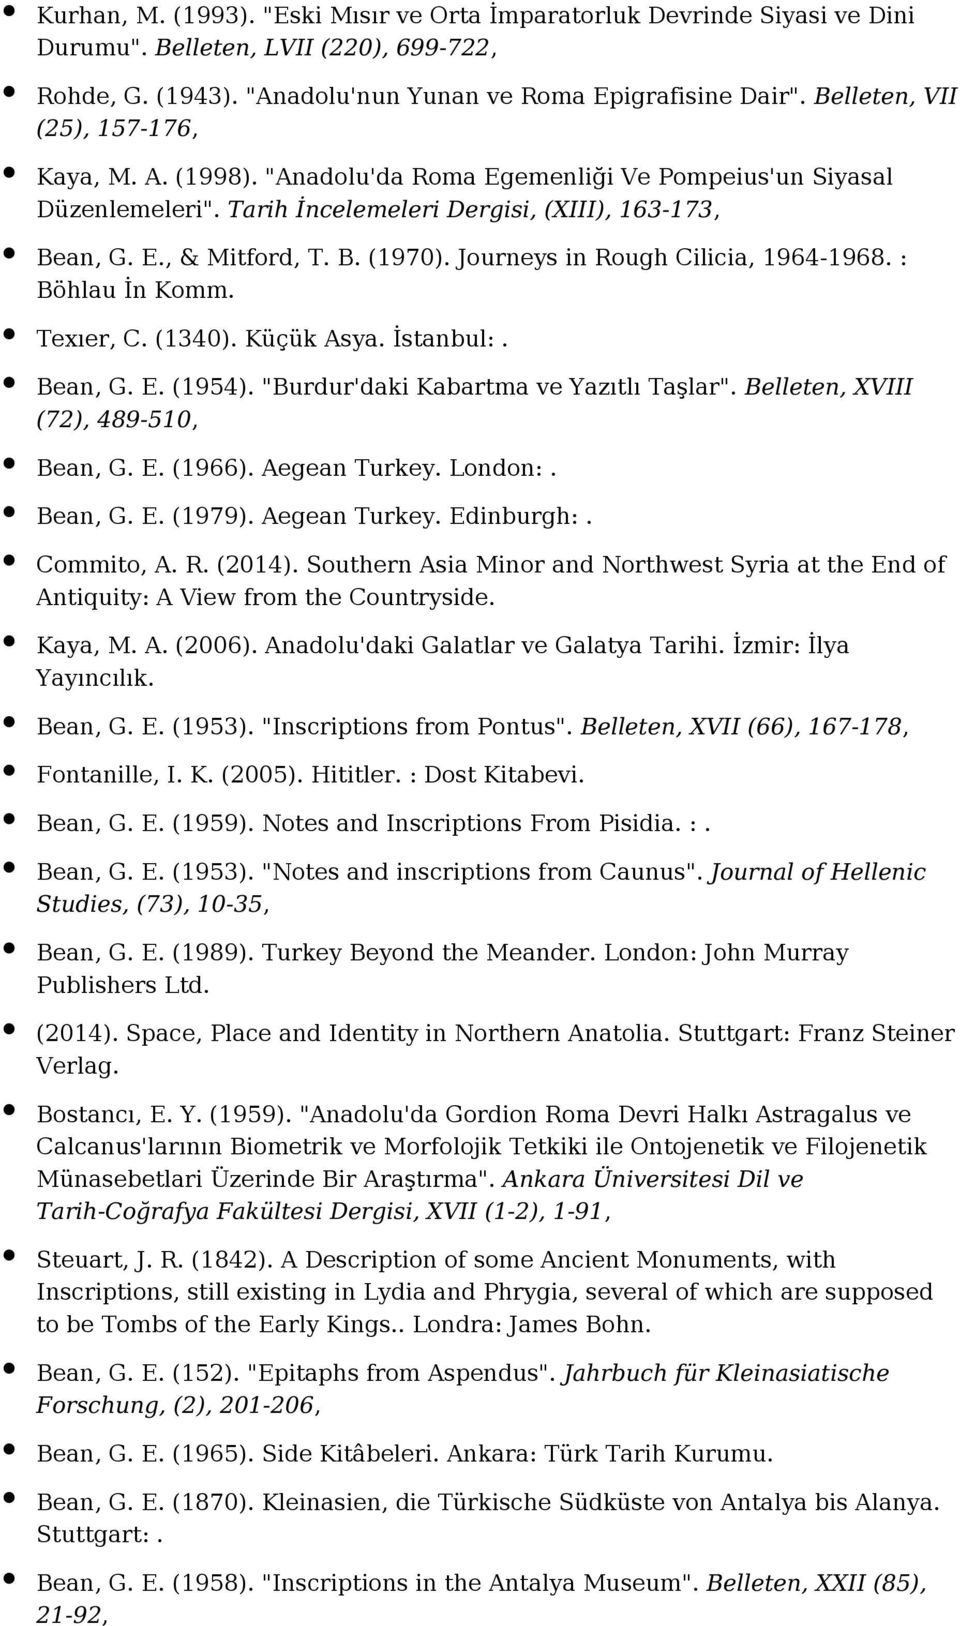 Journeys in Rough Cilicia, 1964-1968. : Böhlau İn Komm. Texıer, C. (1340). Küçük Asya. İstanbul:. Bean, G. E. (1954). "Burdur'daki Kabartma ve Yazıtlı Taşlar". Belleten, XVIII (72), 489-510, Bean, G.